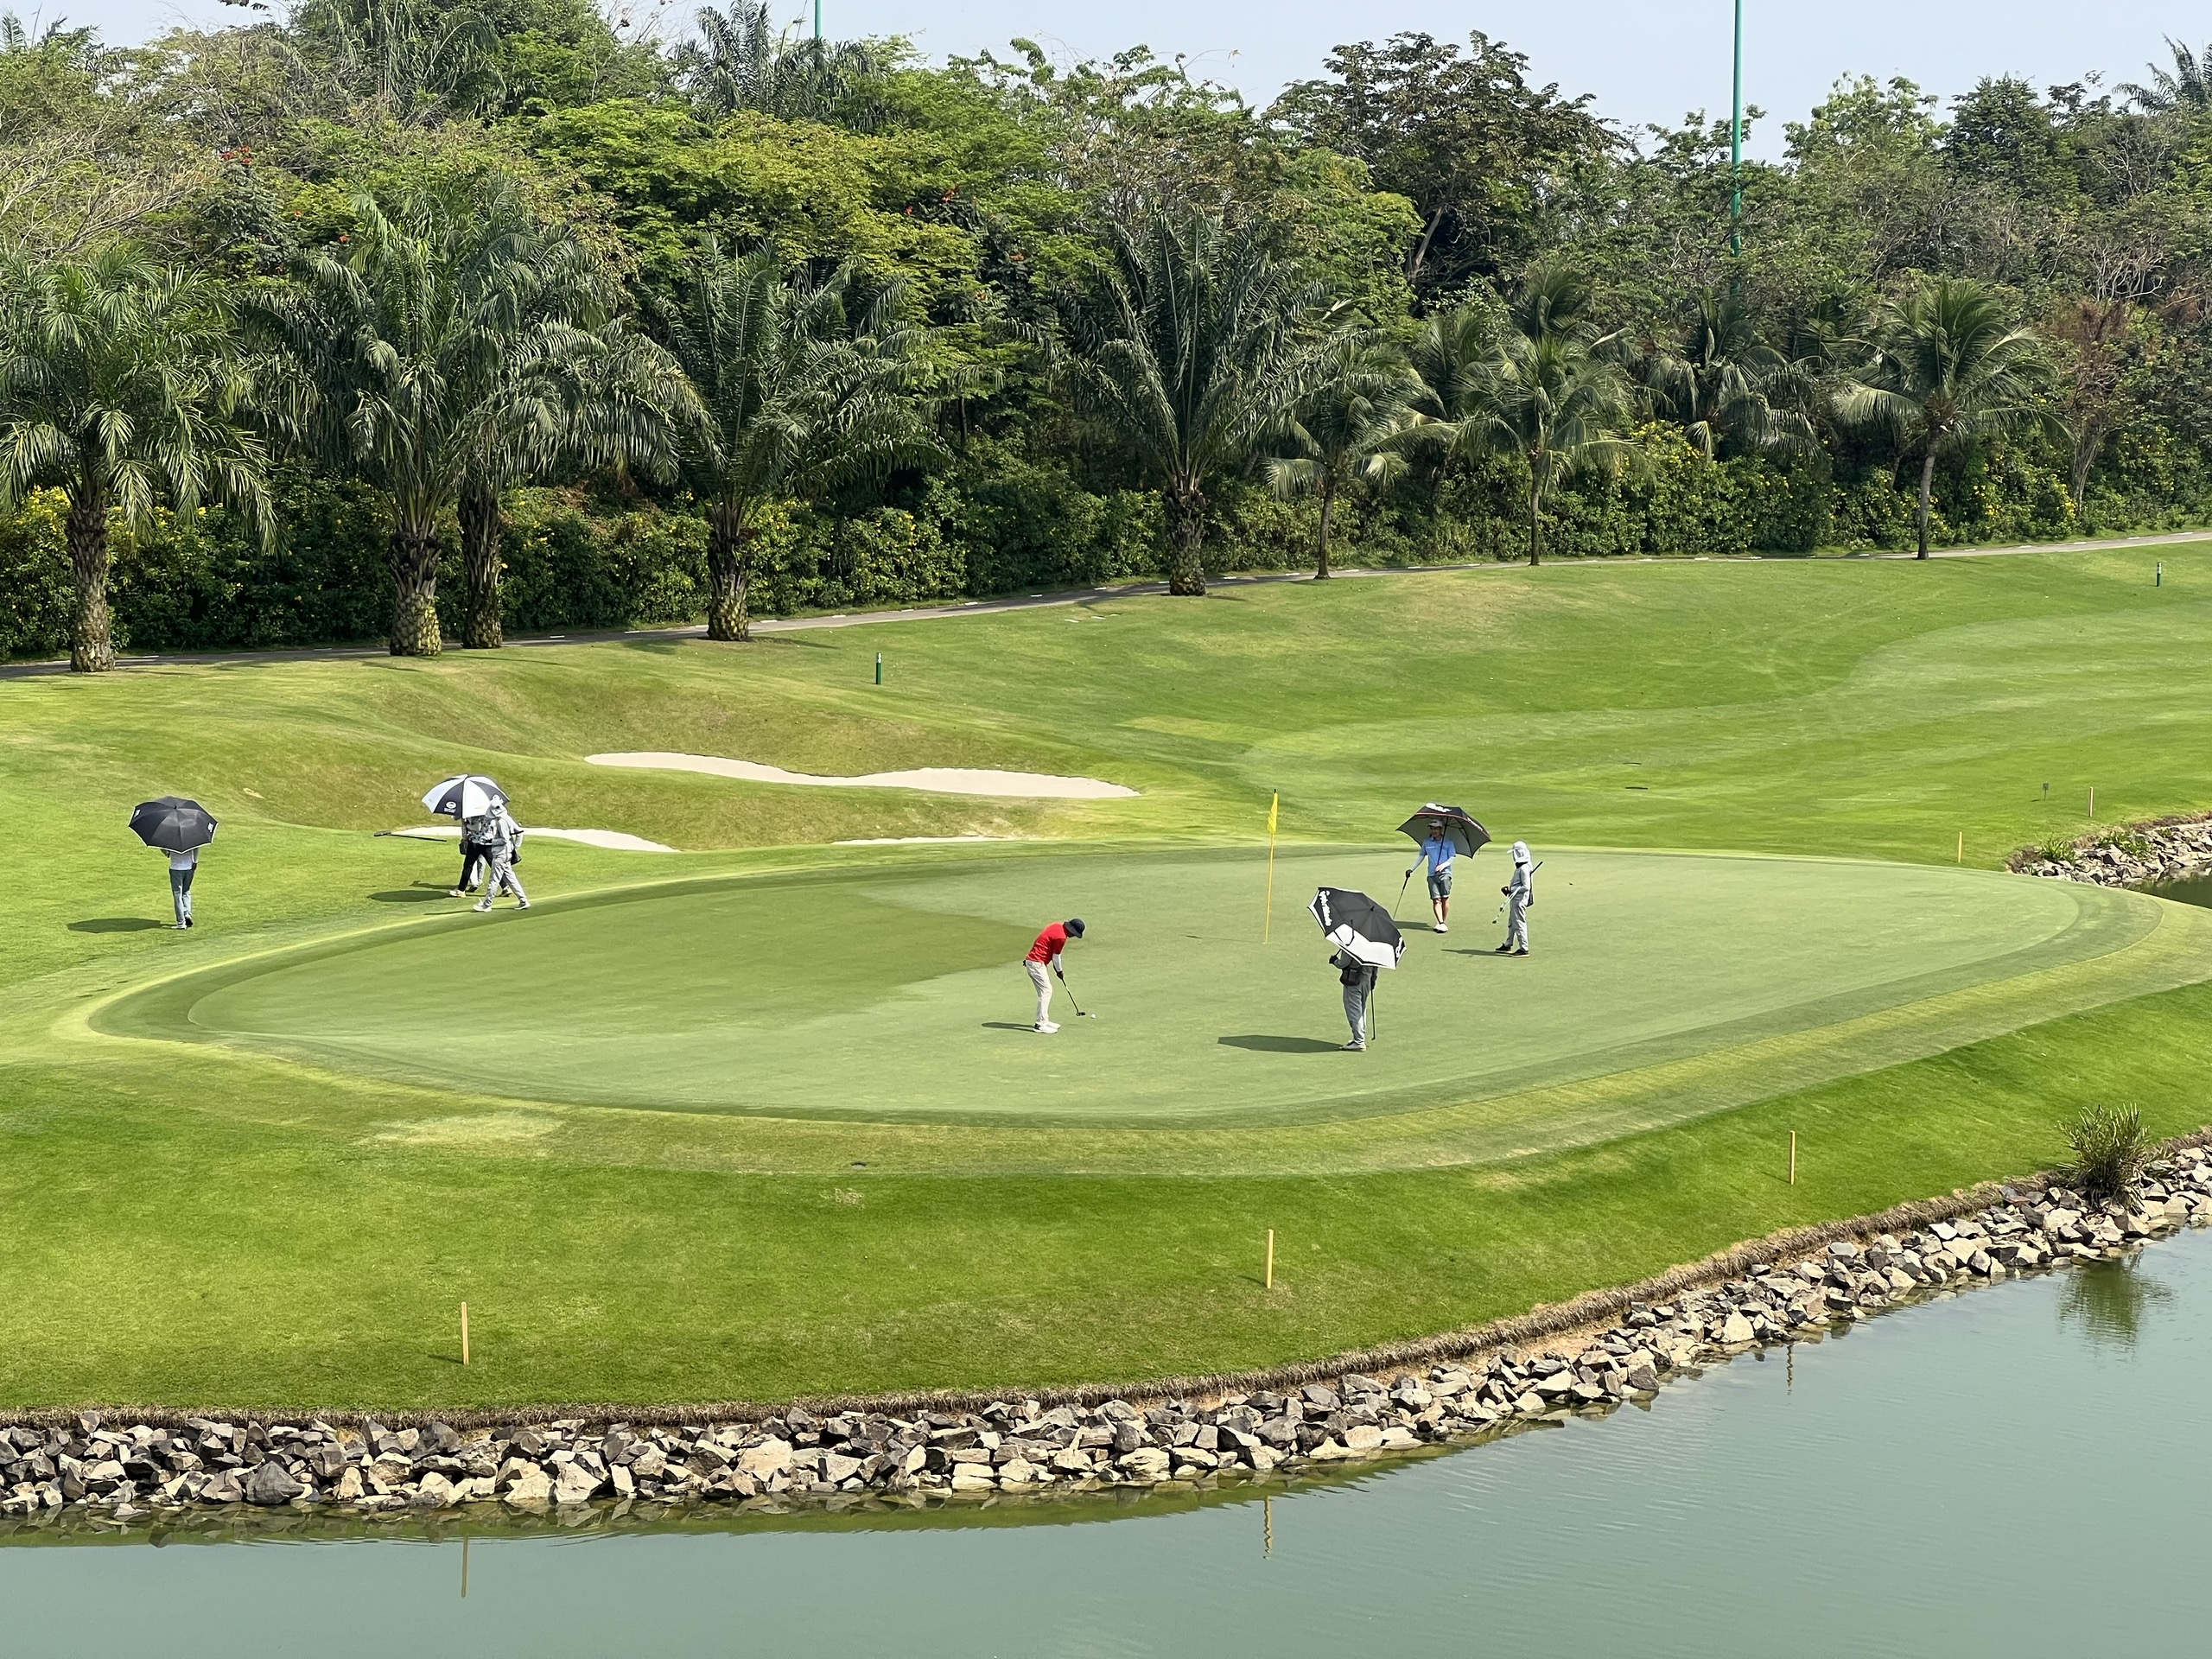  Du lịch golf là loại hình du lịch phân khúc khách du lịch trung và cao cấp, có mức chi tiêu cao khi đến TP. Hồ Chí Minh